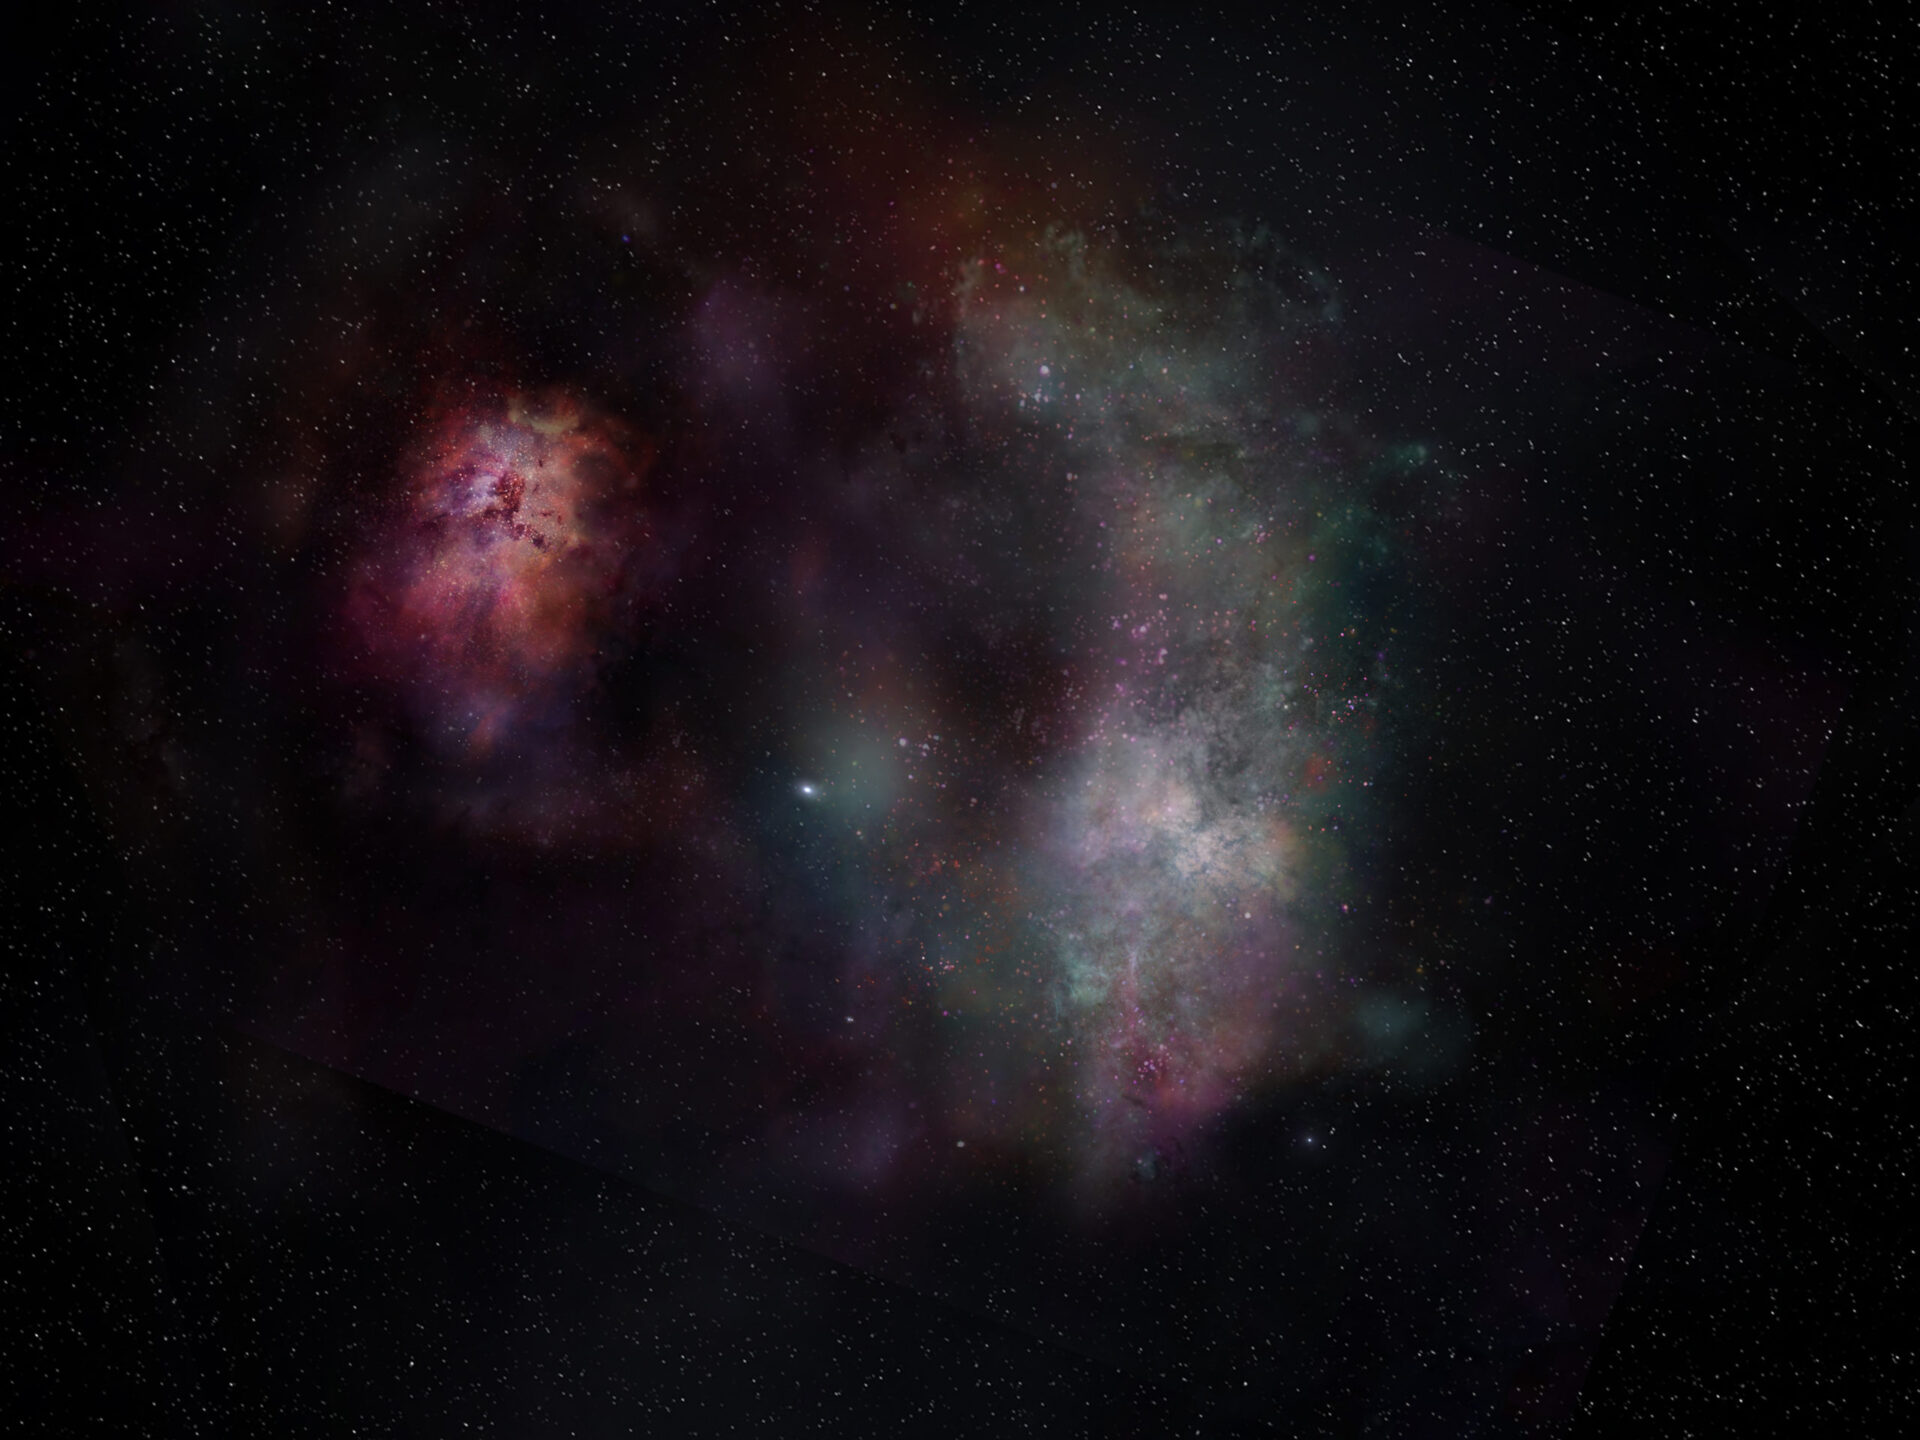 <p>Esta representación artística muestra el continuo de polvo y las líneas moleculares del monóxido de carbono y el agua observadas en la pareja de galaxias conocida como SPT0311-58. Los datos de ALMA revelaron cantidades abundantes de CO y H2O en la galaxia más grande, lo cual implica que el Universo molecular ya estaba muy activo al poco tiempo de que surgieron estos elementos.<br />
Créditos: ALMA (ESO/NAOJ/NRAO) /S. Dagnello (NRAO)</p>
